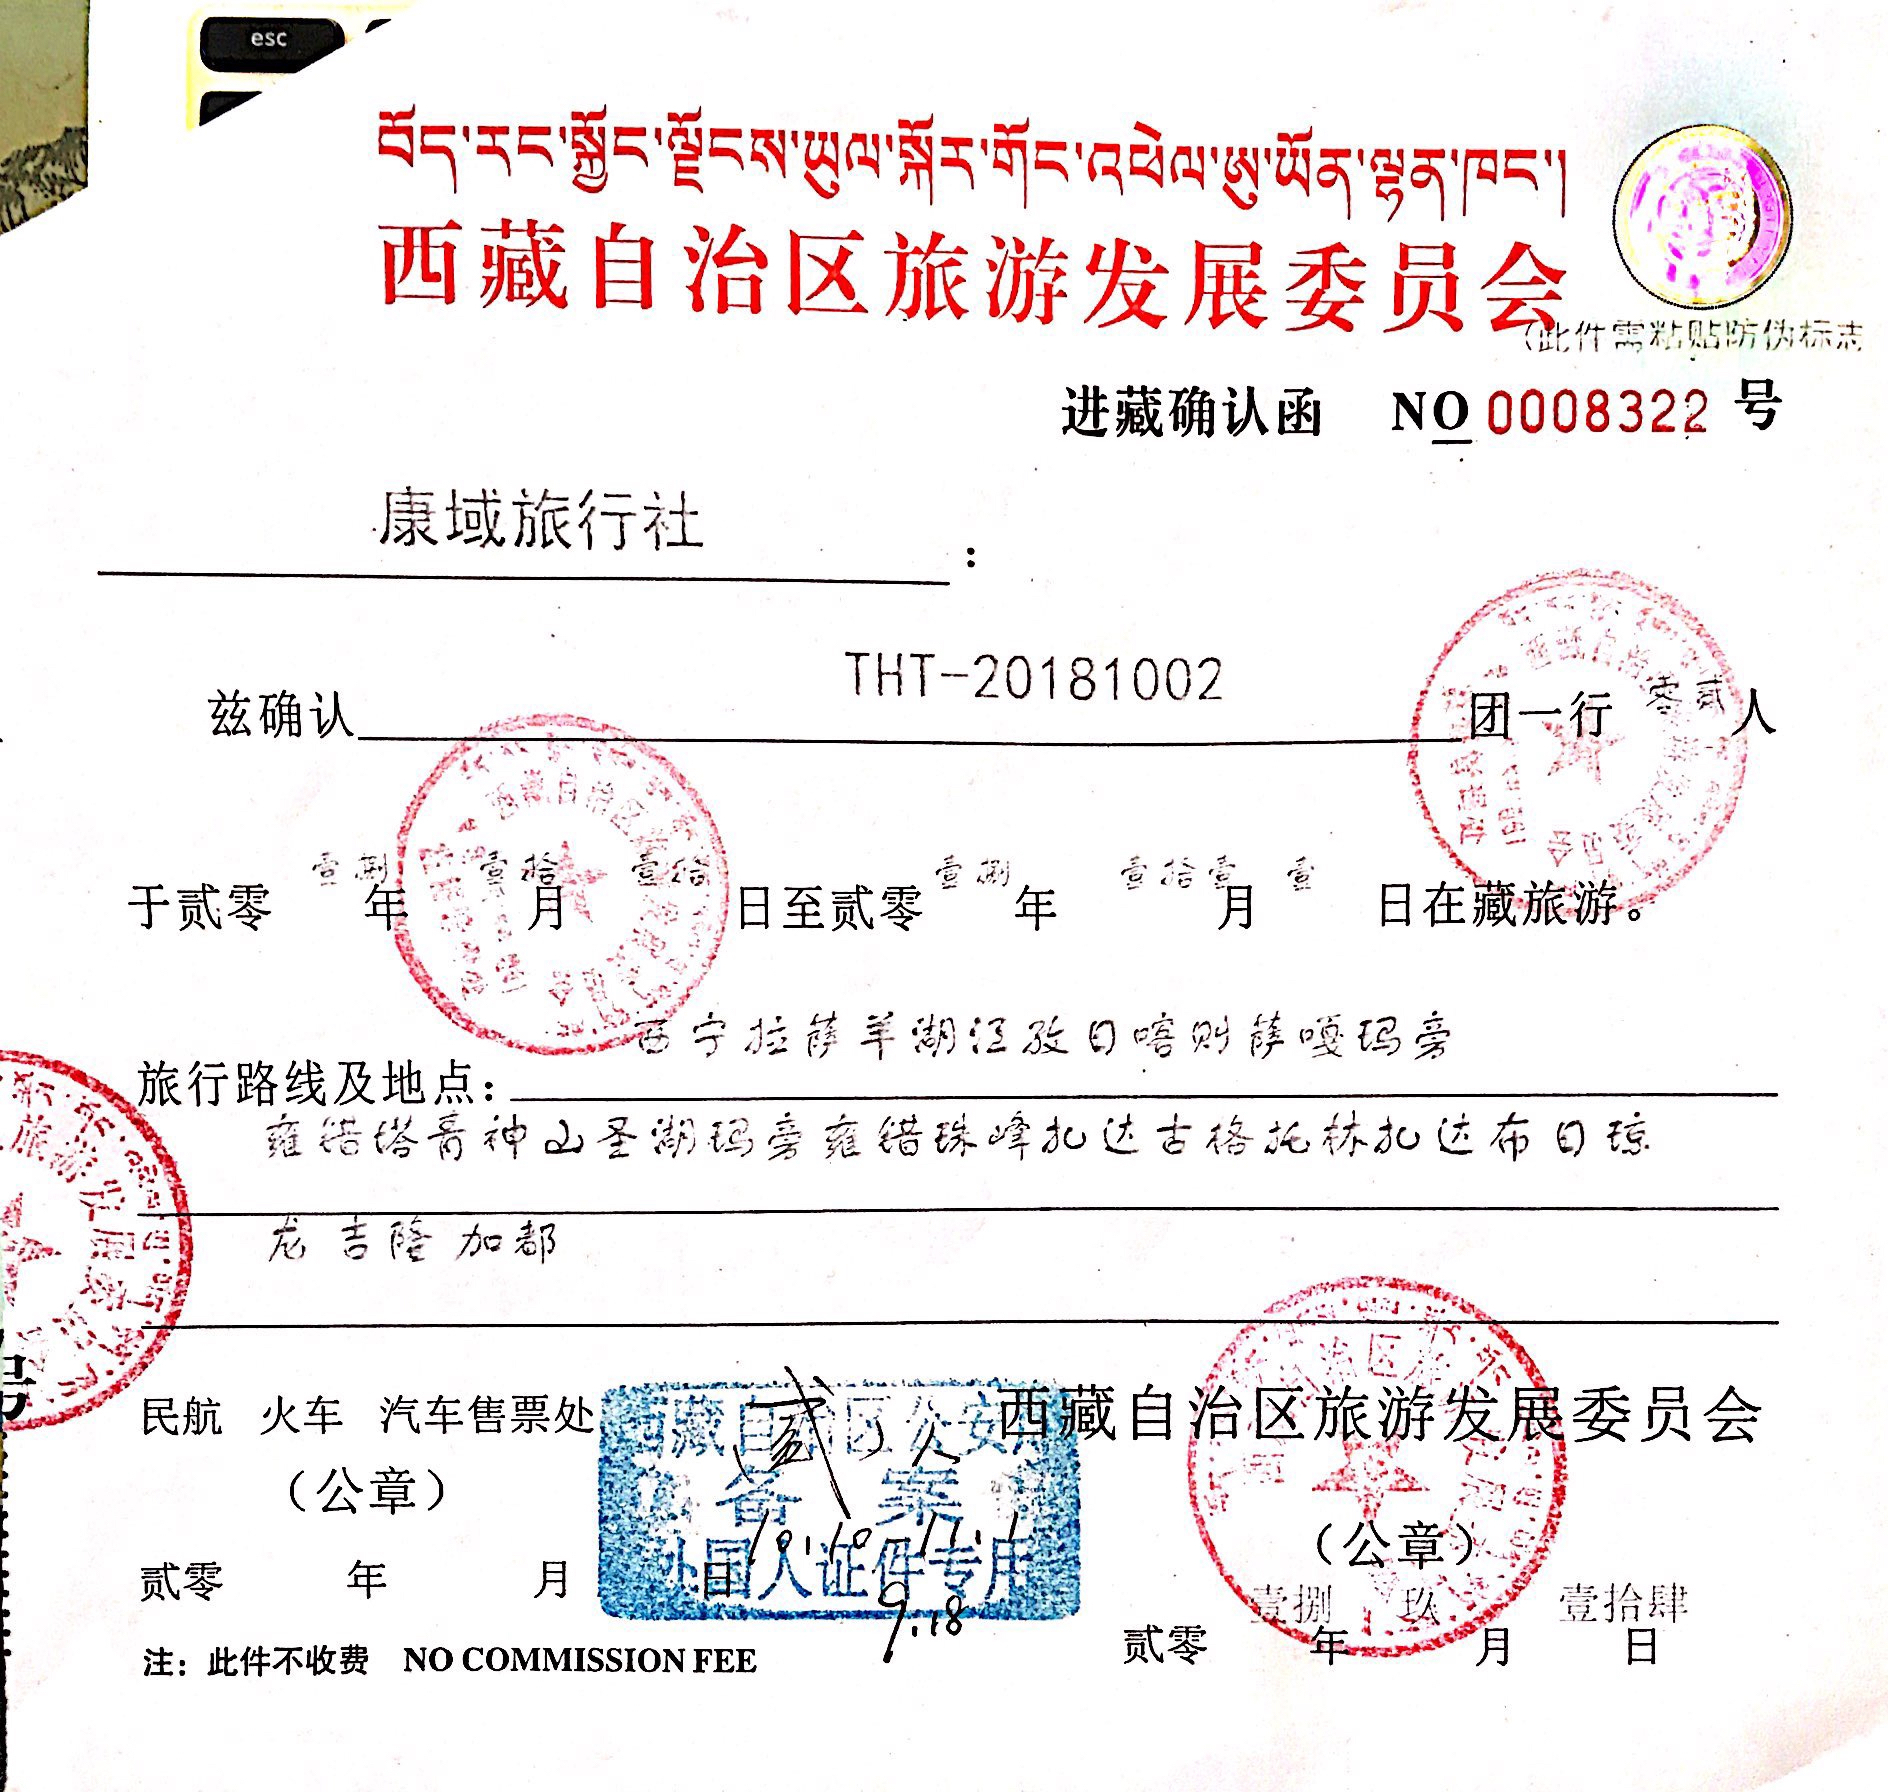 tibet visit permit